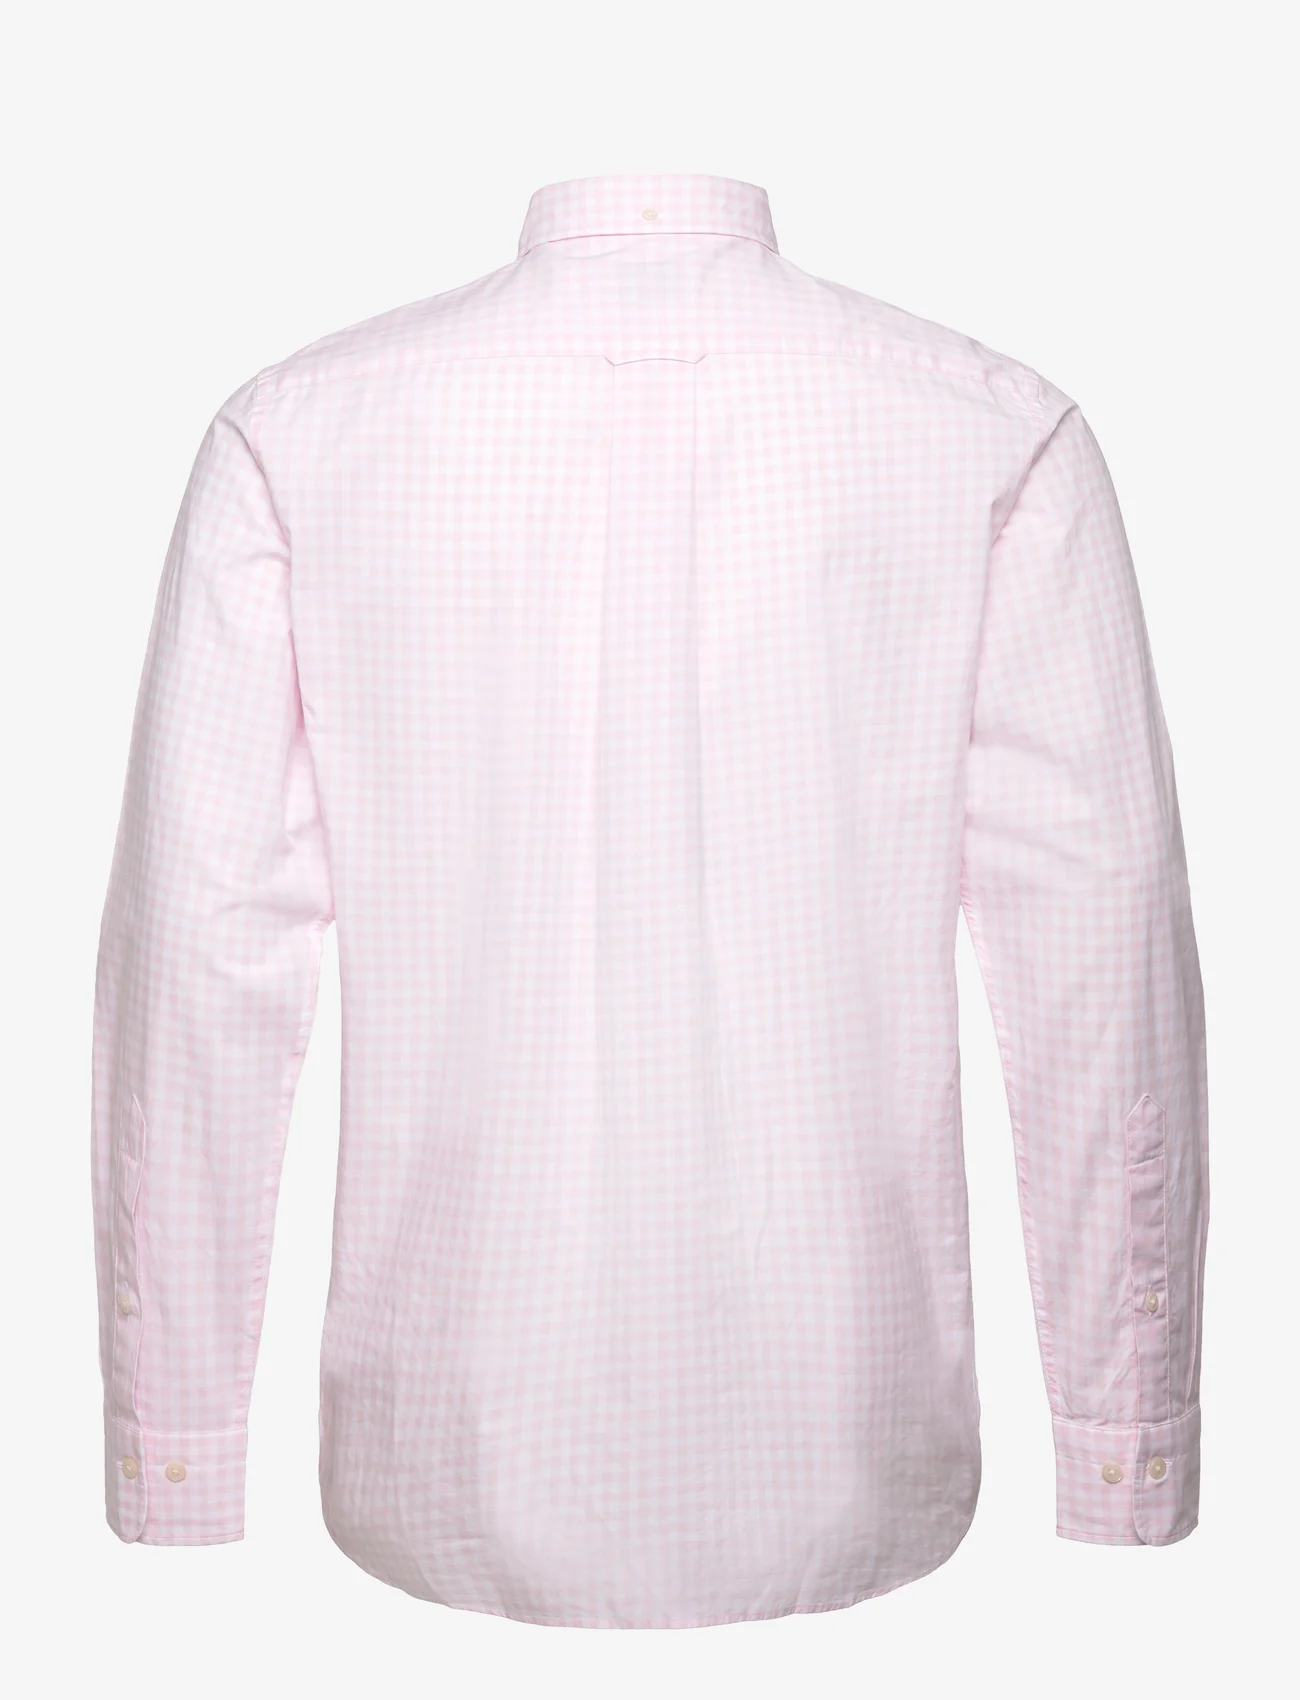 GANT - REG CLASSIC POPLIN GINGHAM SHIRT - karierte hemden - light pink - 1